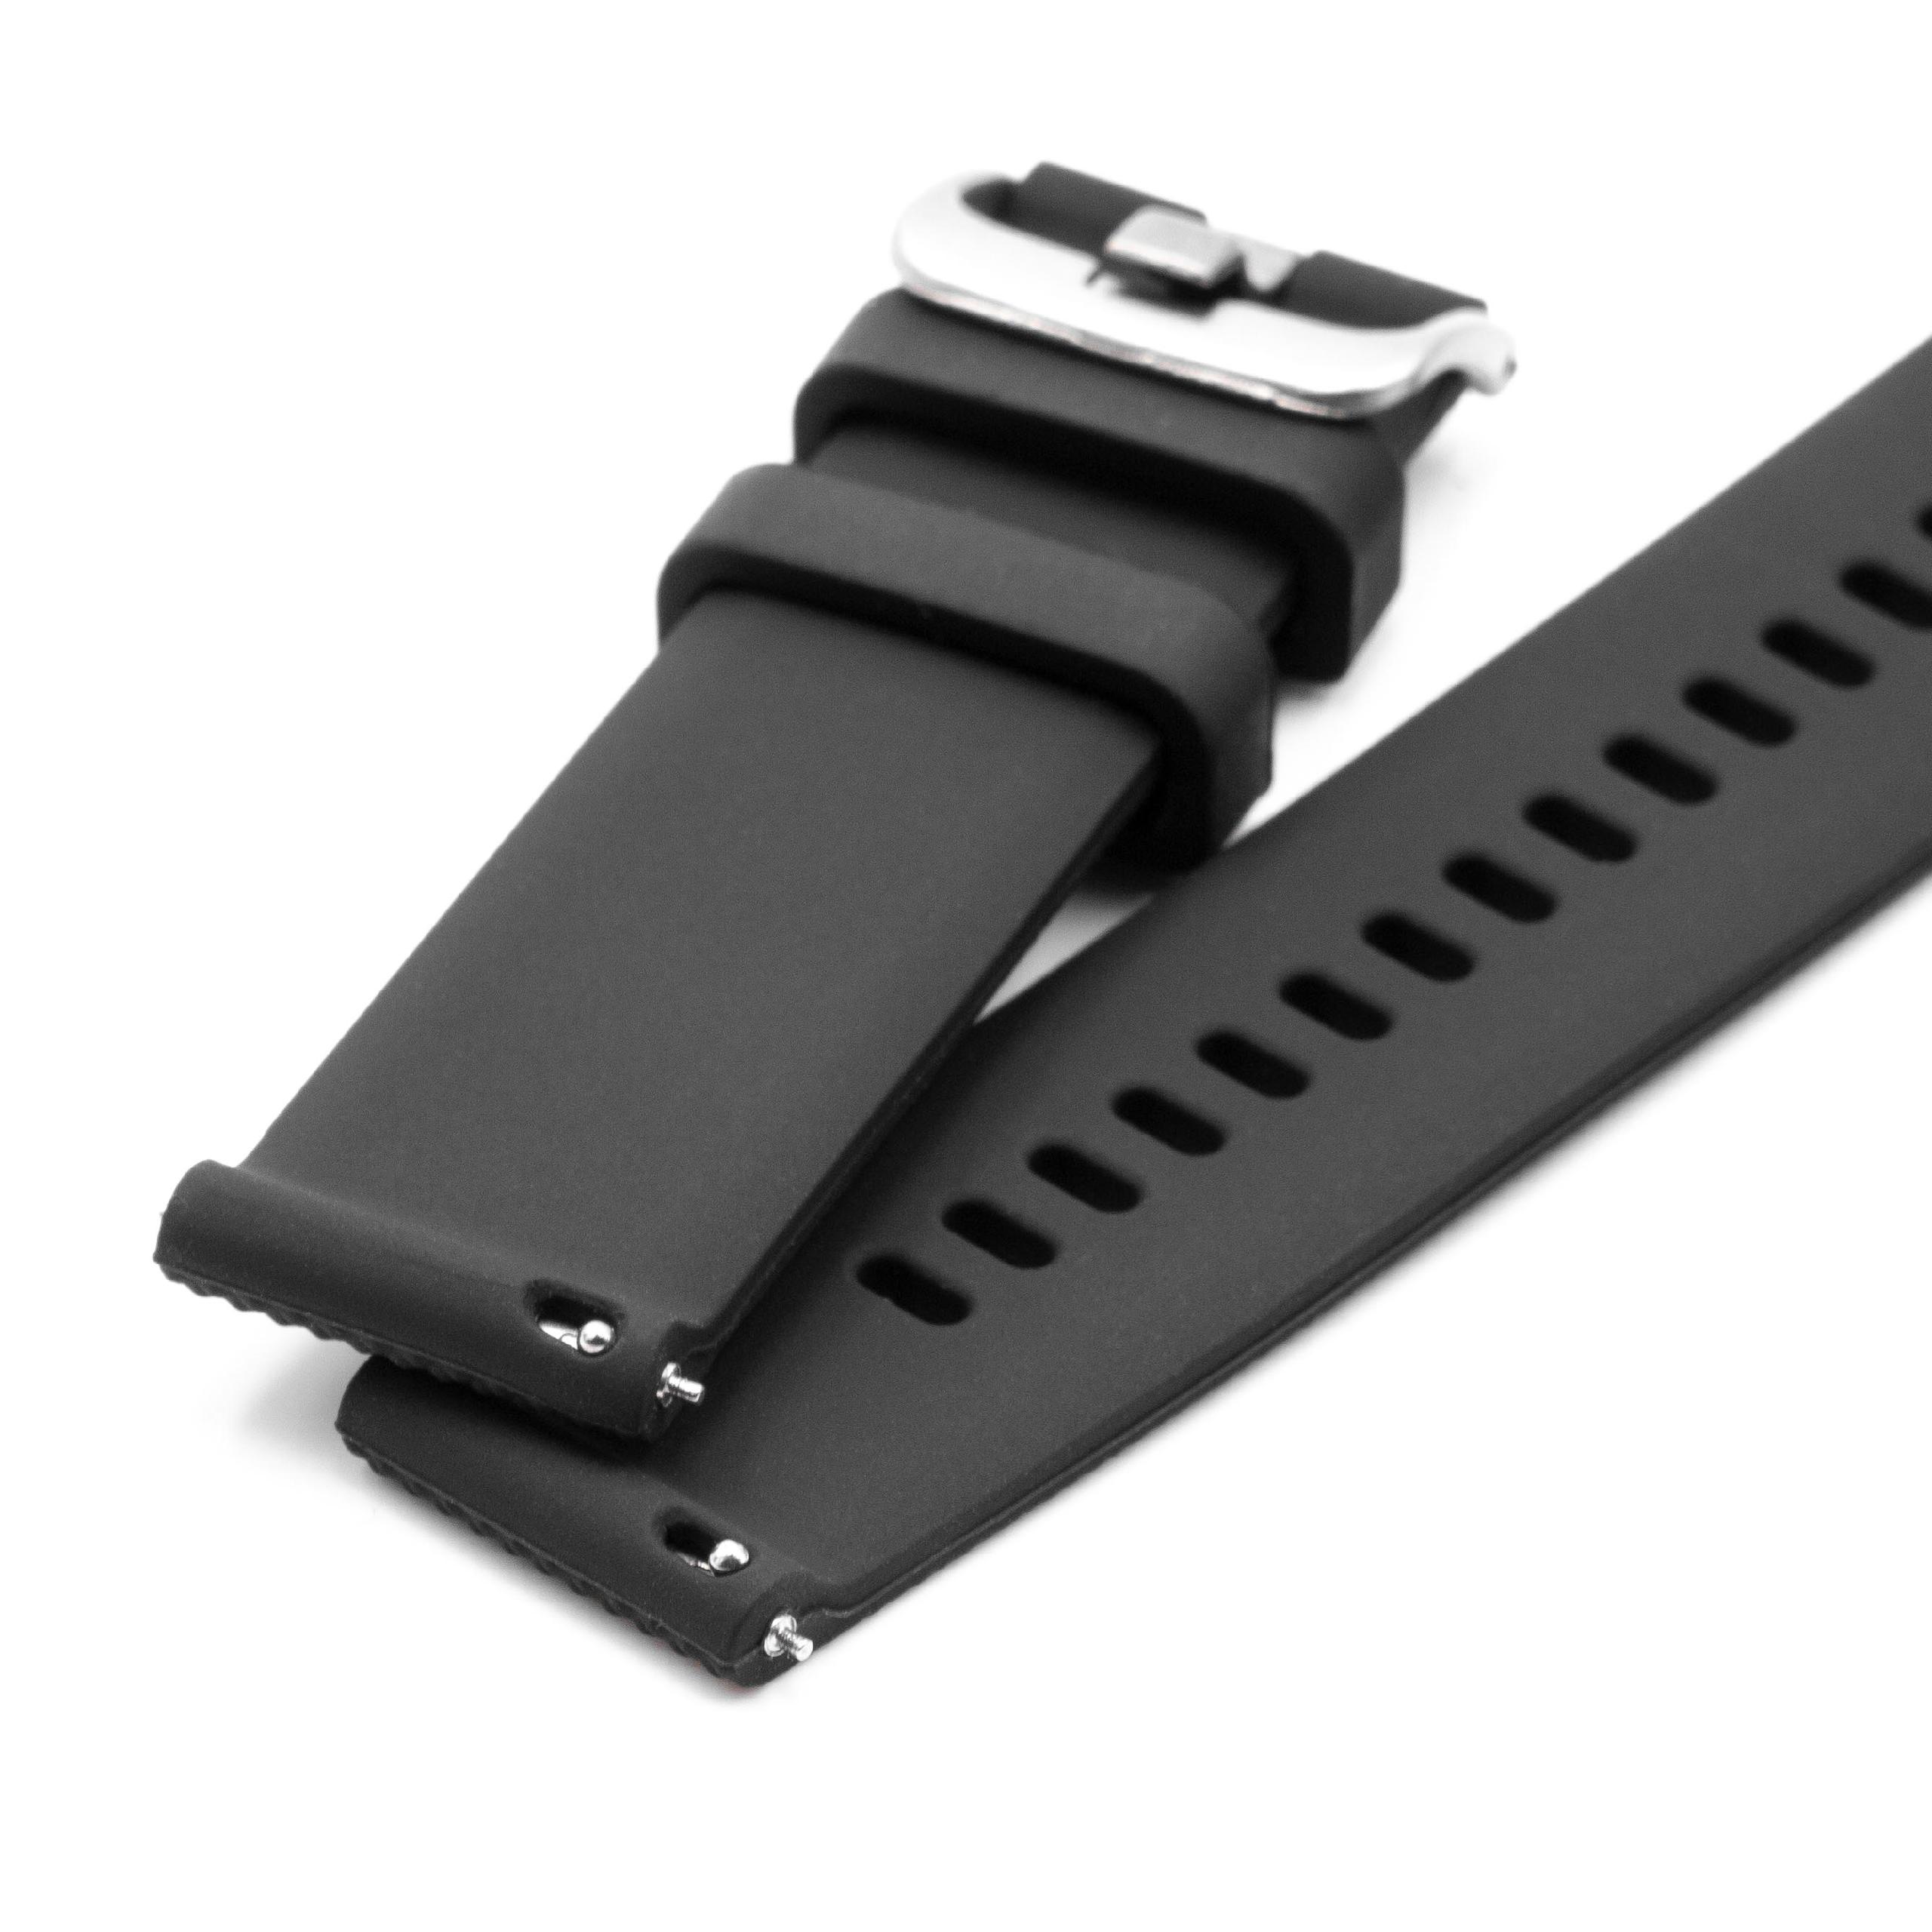 cinturino S per Samsung Galaxy Watch Smartwatch - fino a 226 mm circonferenza del polso, silicone, nero